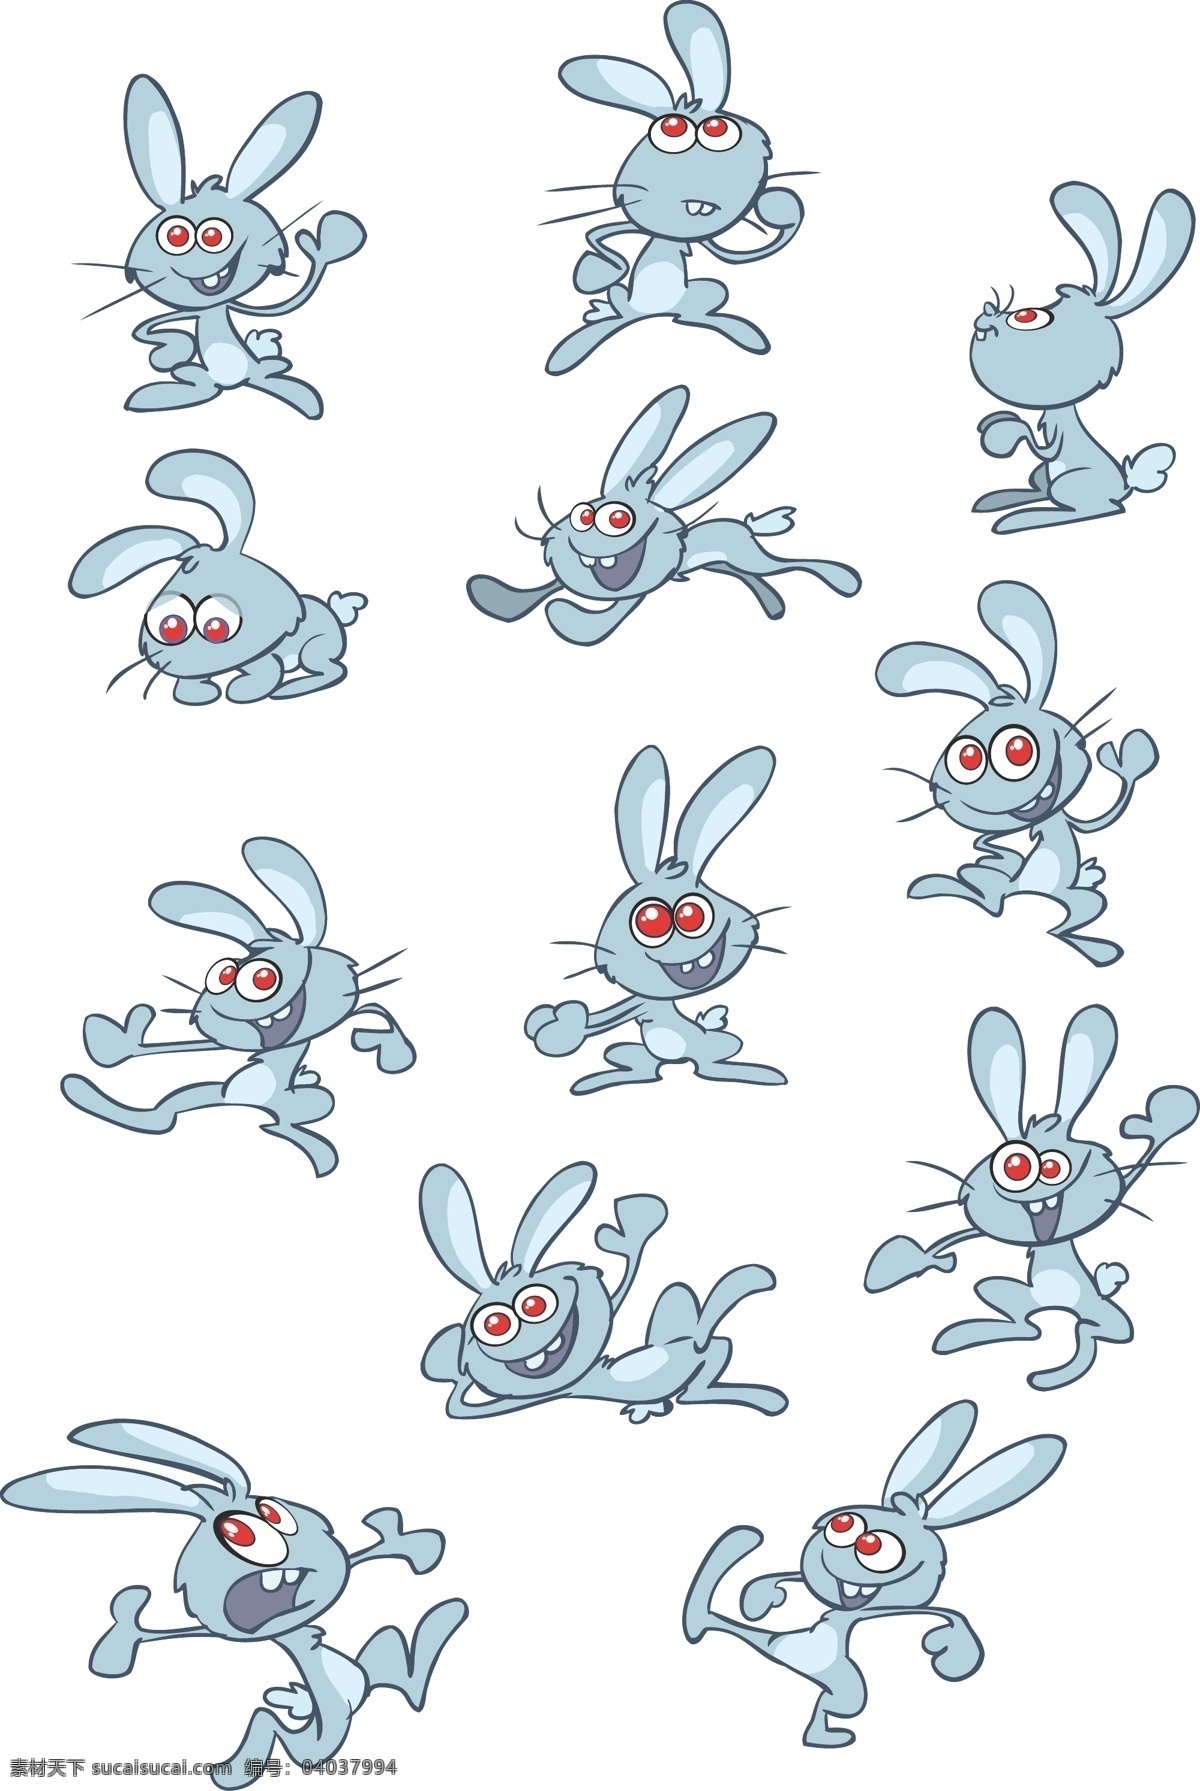 可爱 卡通 兔 卡通兔 模板 设计稿 素材元素 兔子 源文件 矢量 可爱兔 矢量图